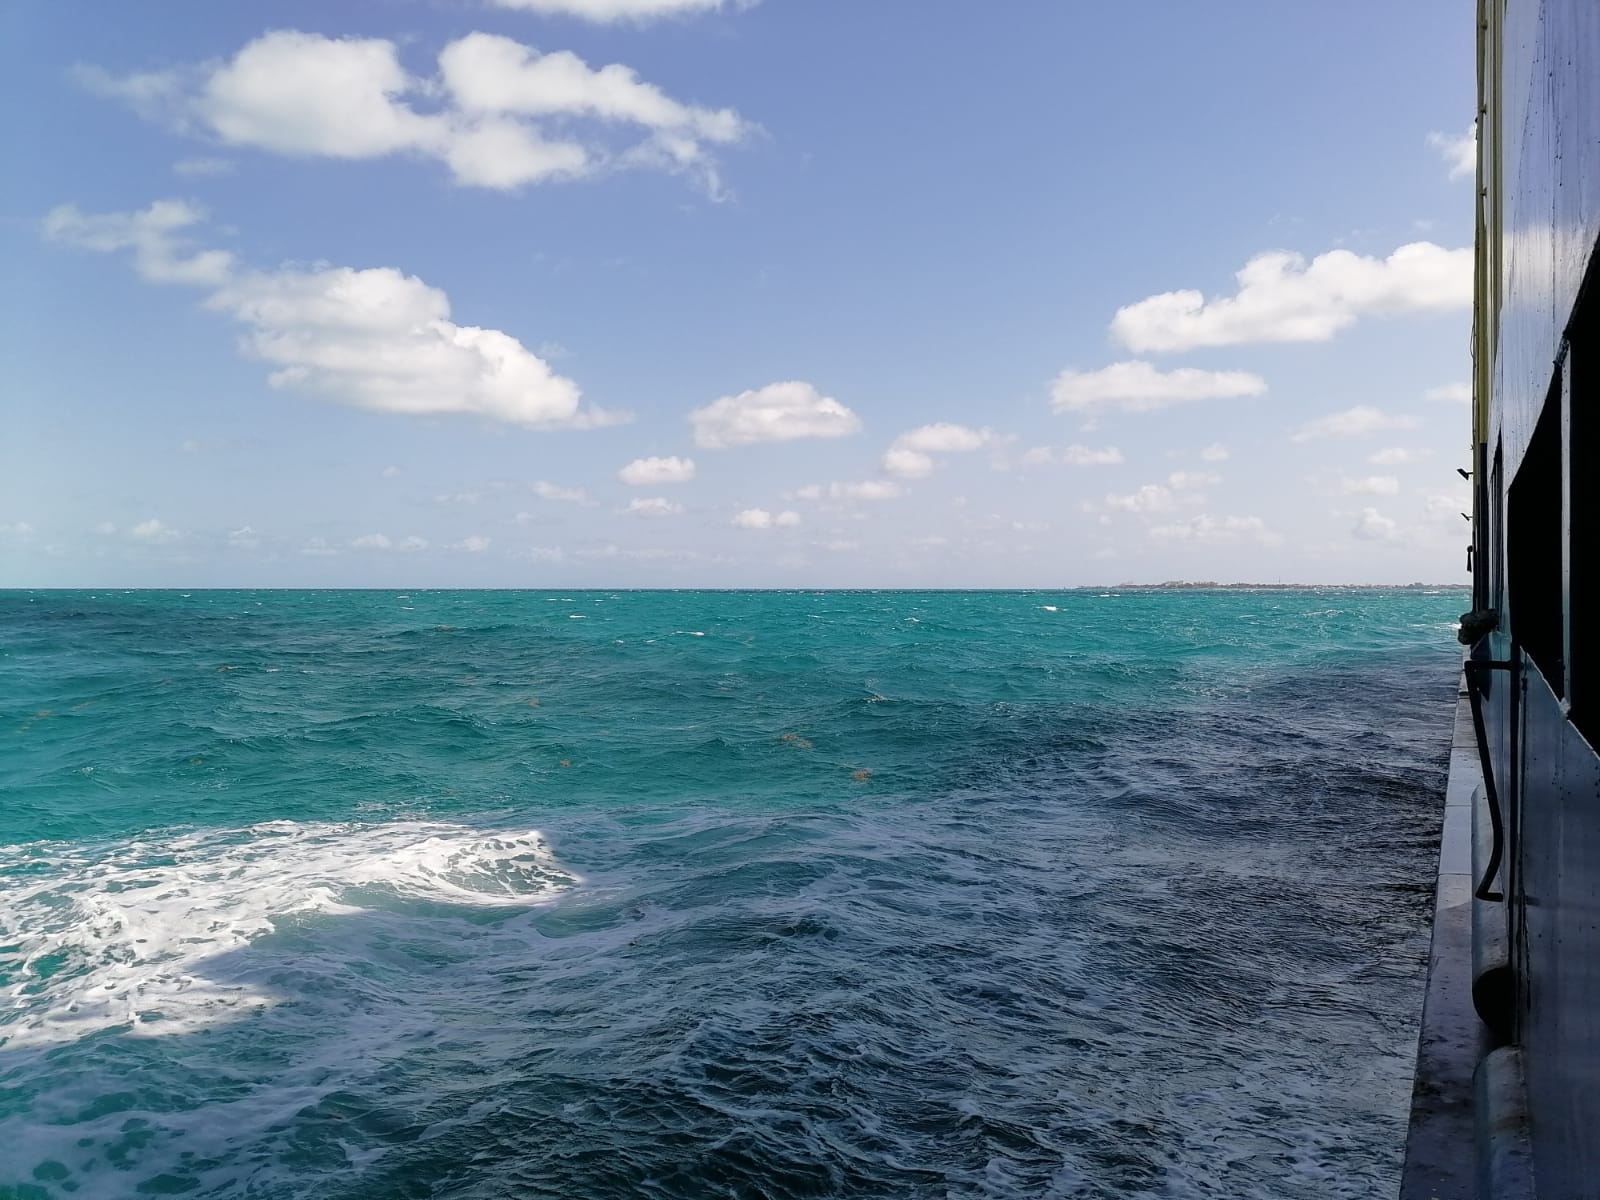 Barco de carga queda varado entre Isla Mujeres y Cancún